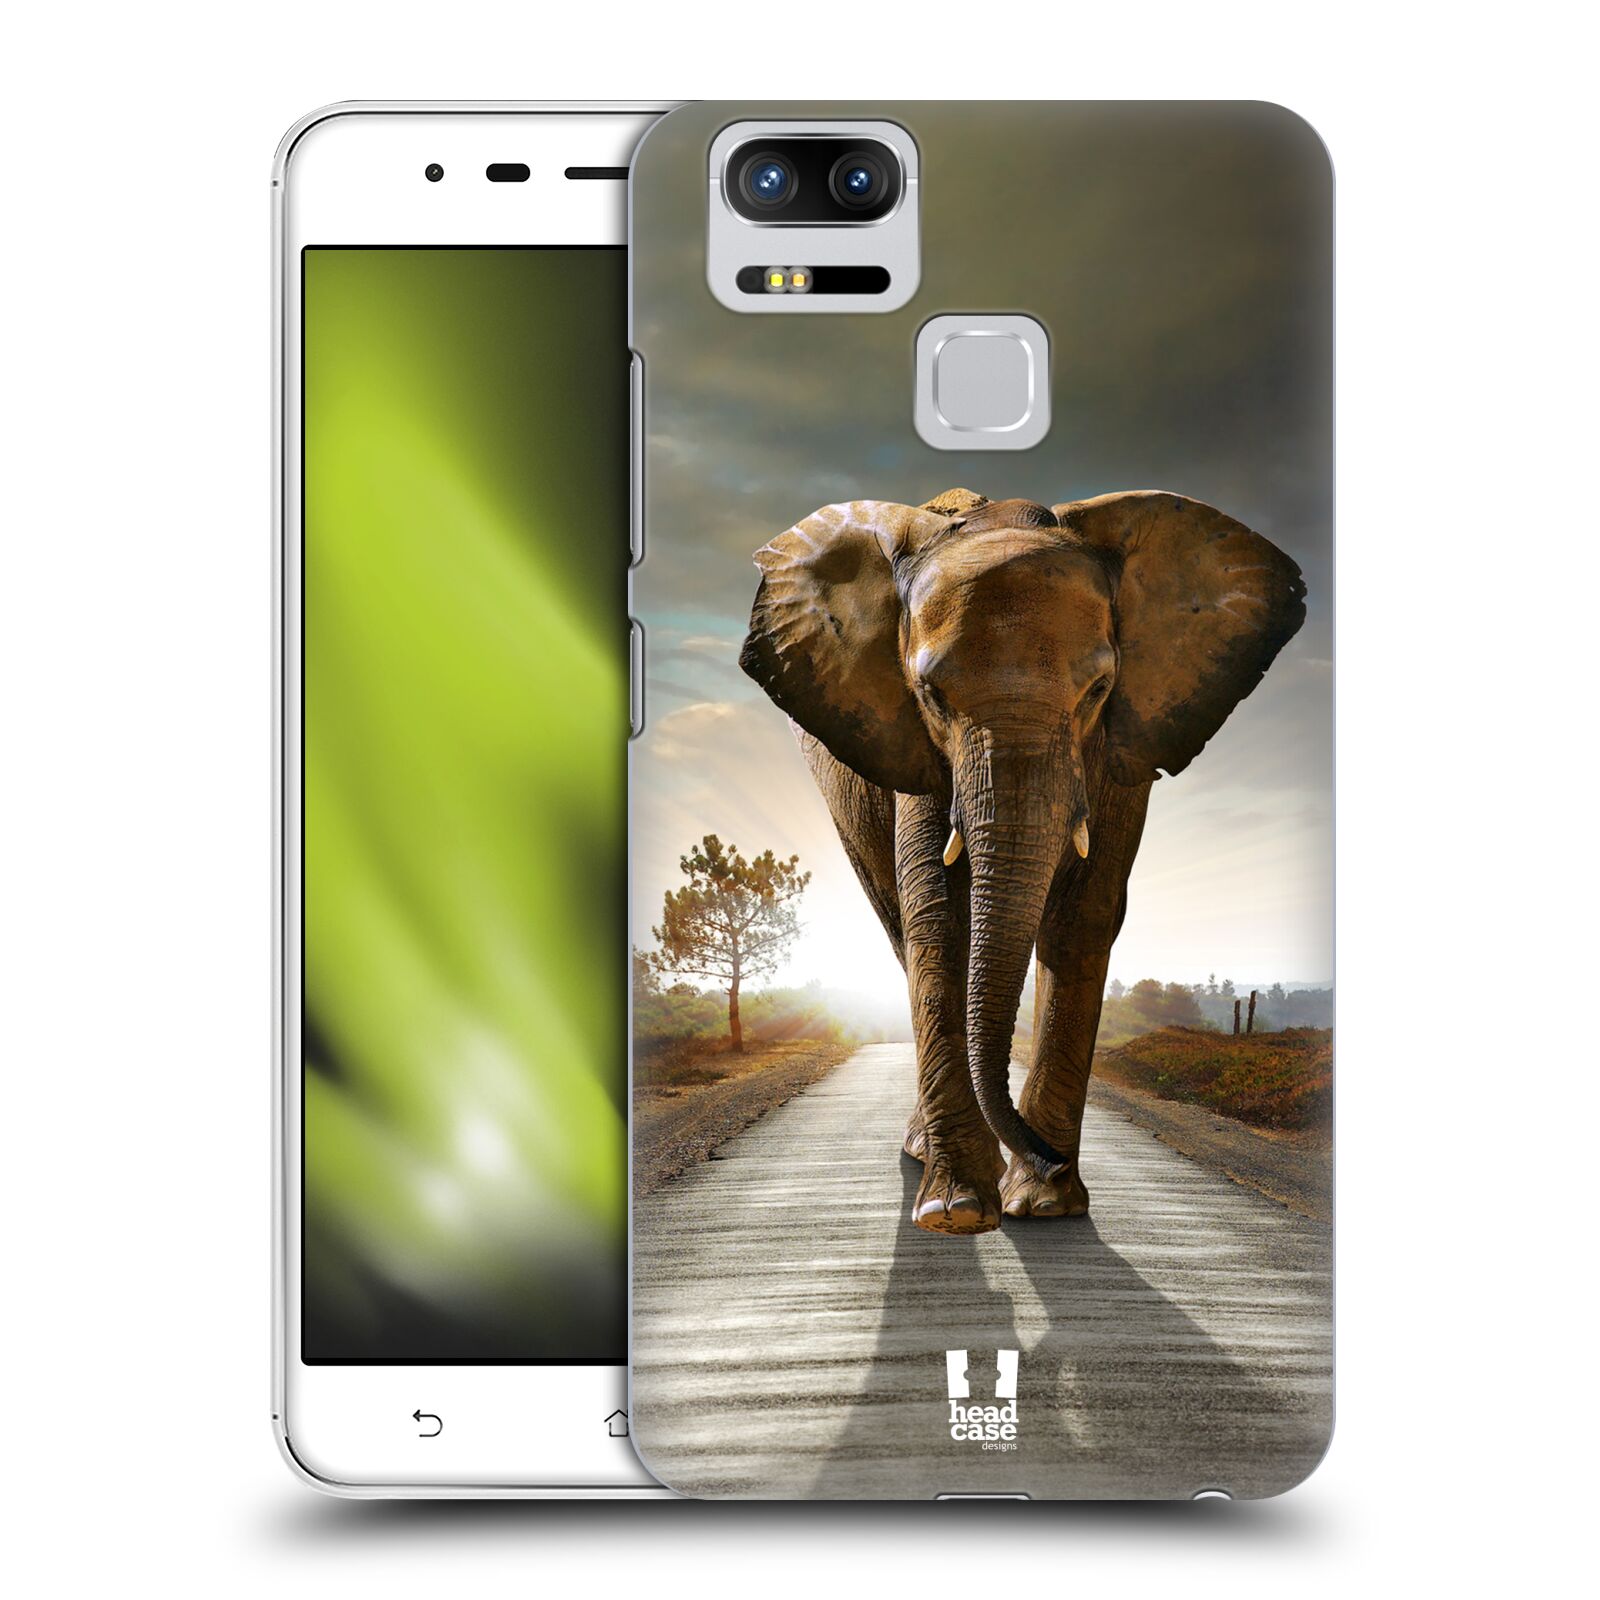 HEAD CASE plastový obal na mobil Asus Zenfone 3 Zoom ZE553KL vzor Divočina, Divoký život a zvířata foto AFRIKA KRÁČEJÍCI SLON